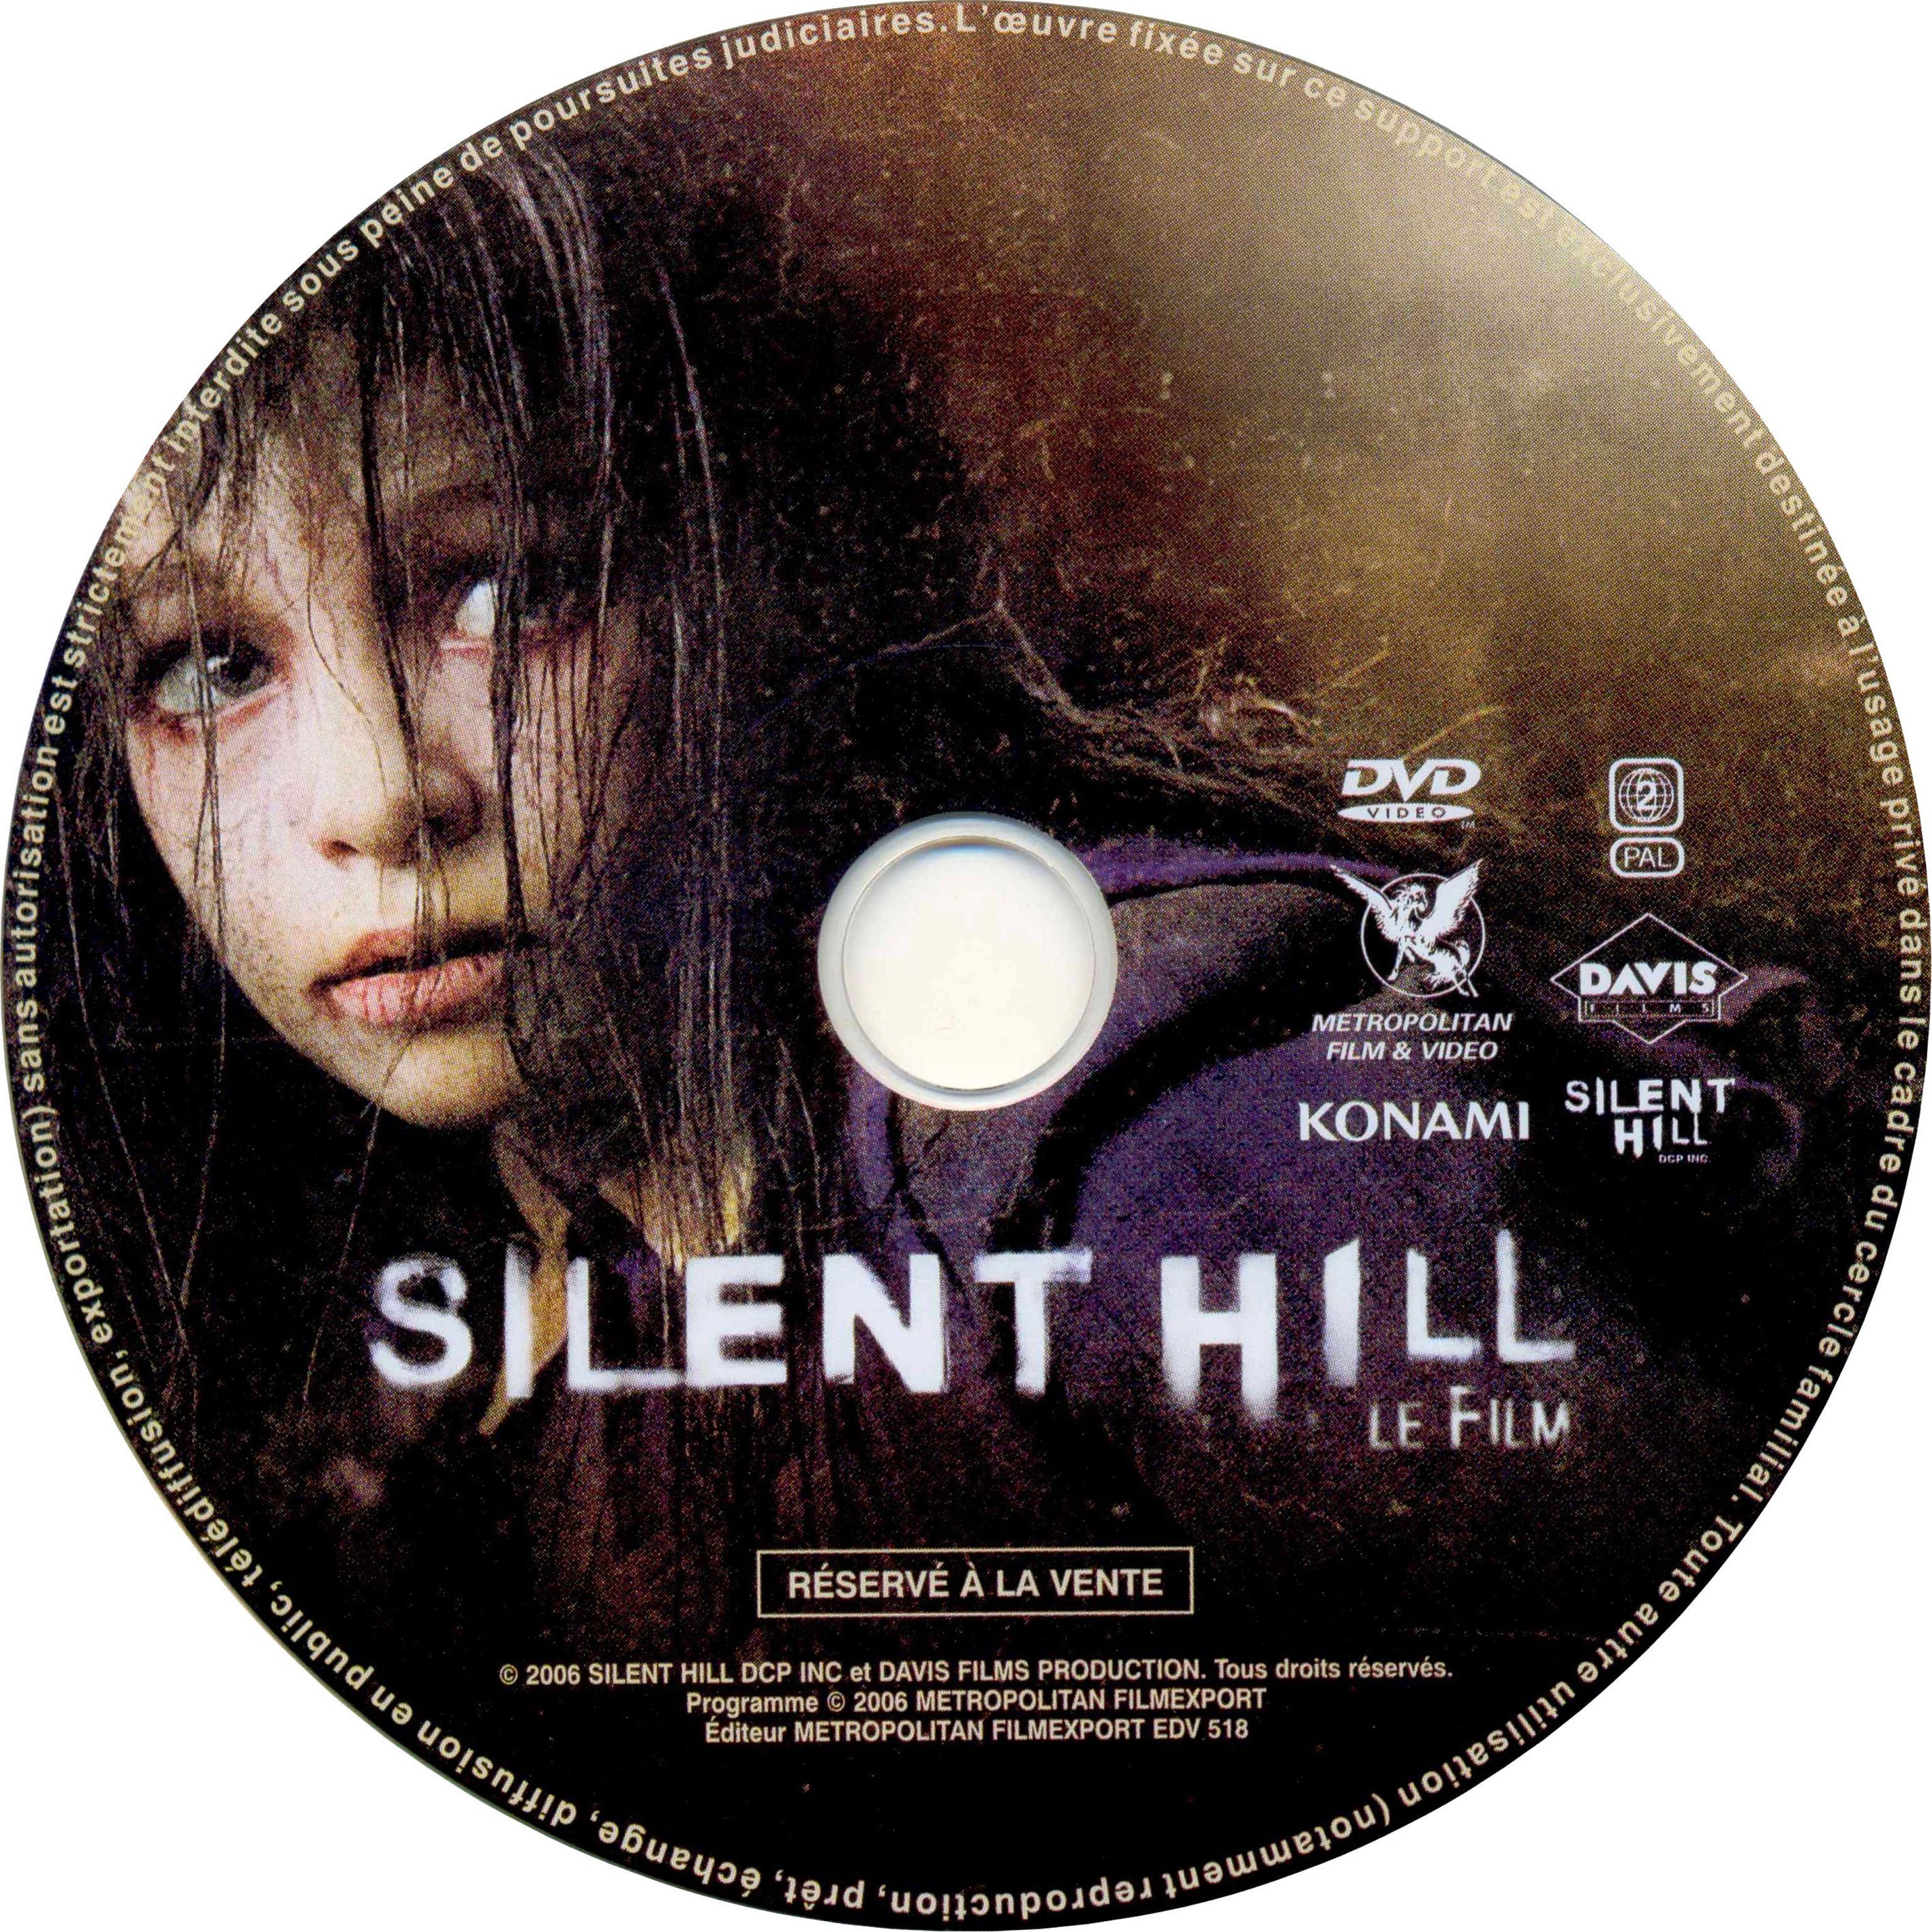 Silent Hill DISC 1